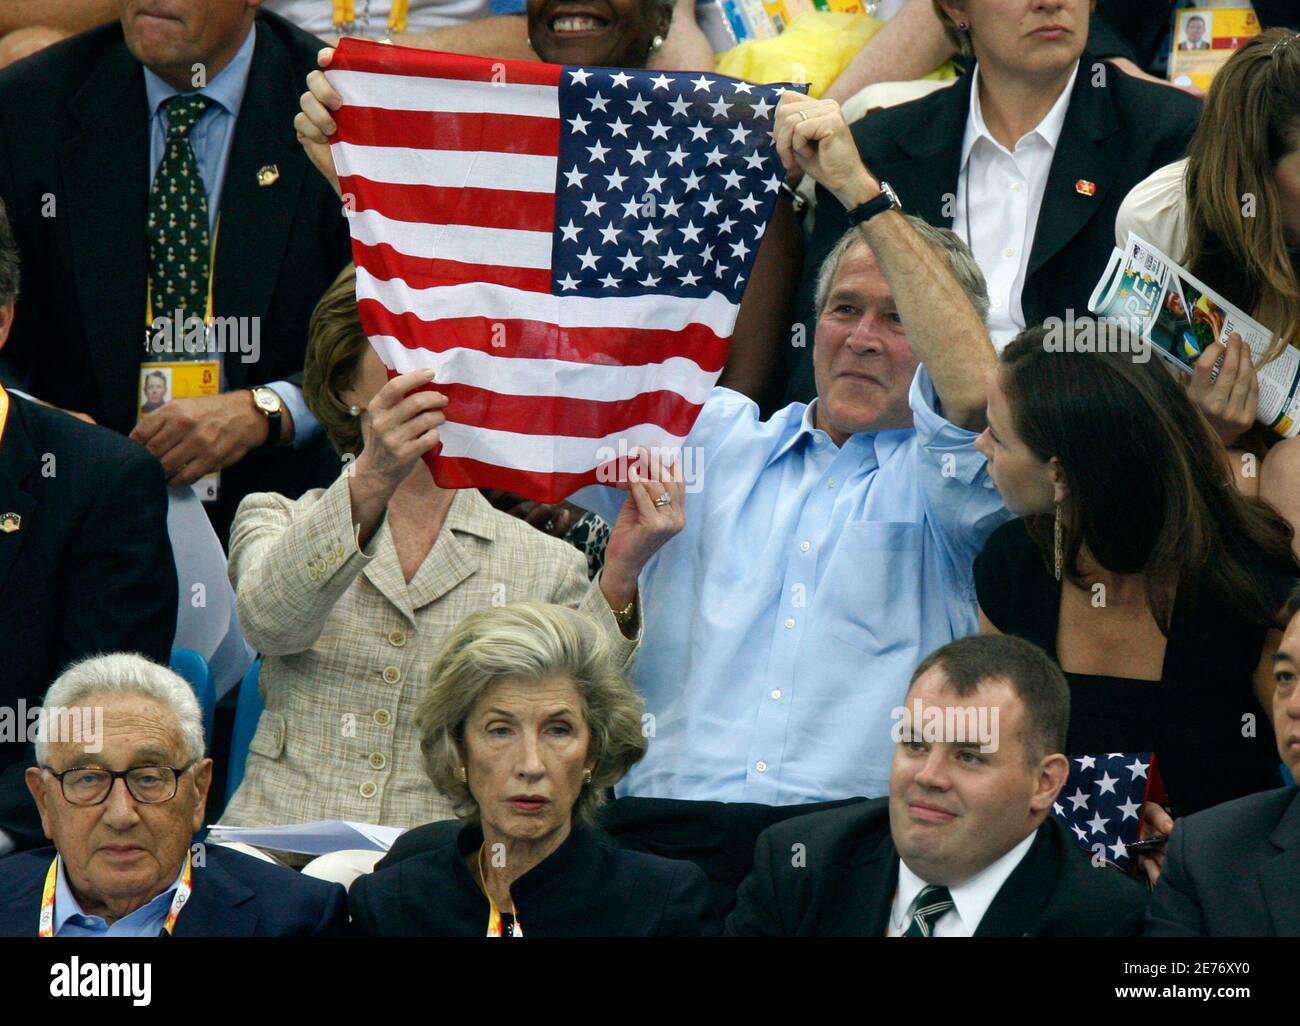 U.S. President George W. Bush (C) hält die US-Flagge als First Lady Laura Bush es passt und Tochter Barbara auf im National Aquatics Center vor dem Schwimmen Wettkampf während der Beijing 2008 Olympischen Spiele August 10, 2008 blickt. An der Unterseite sind ehemalige US-Außenminister Henry Kissinger (L) und seine Frau Nancy.     REUTERS/Jerry Lampen (CHINA) Stockfoto